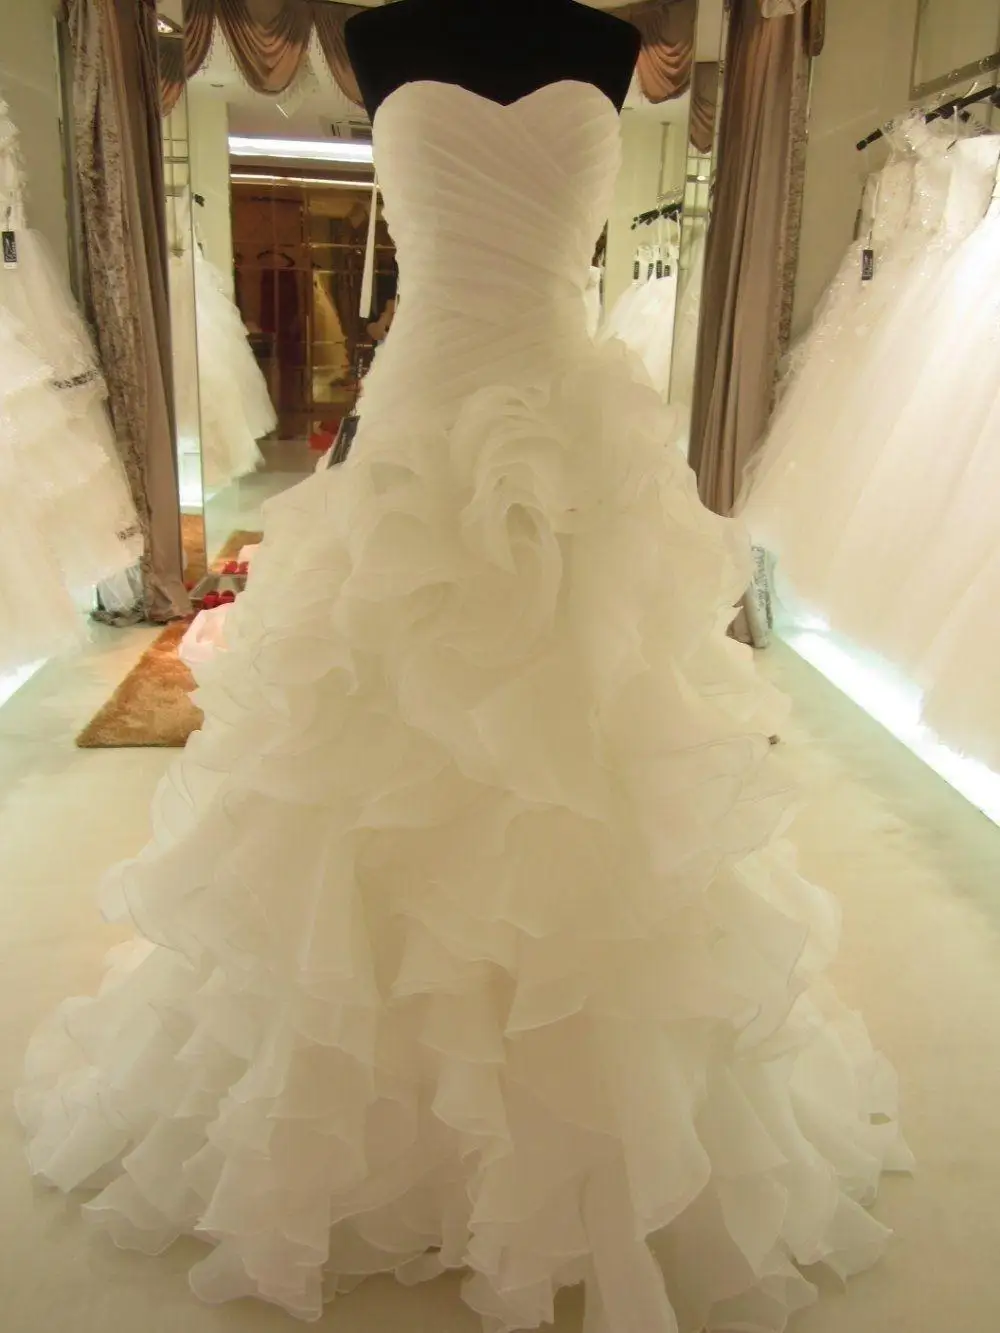 

Модное свадебное платье из органзы, элегантное сдержанное длинное белое/слоновая кость, со складками, со шнуровкой сзади, современное сваде...